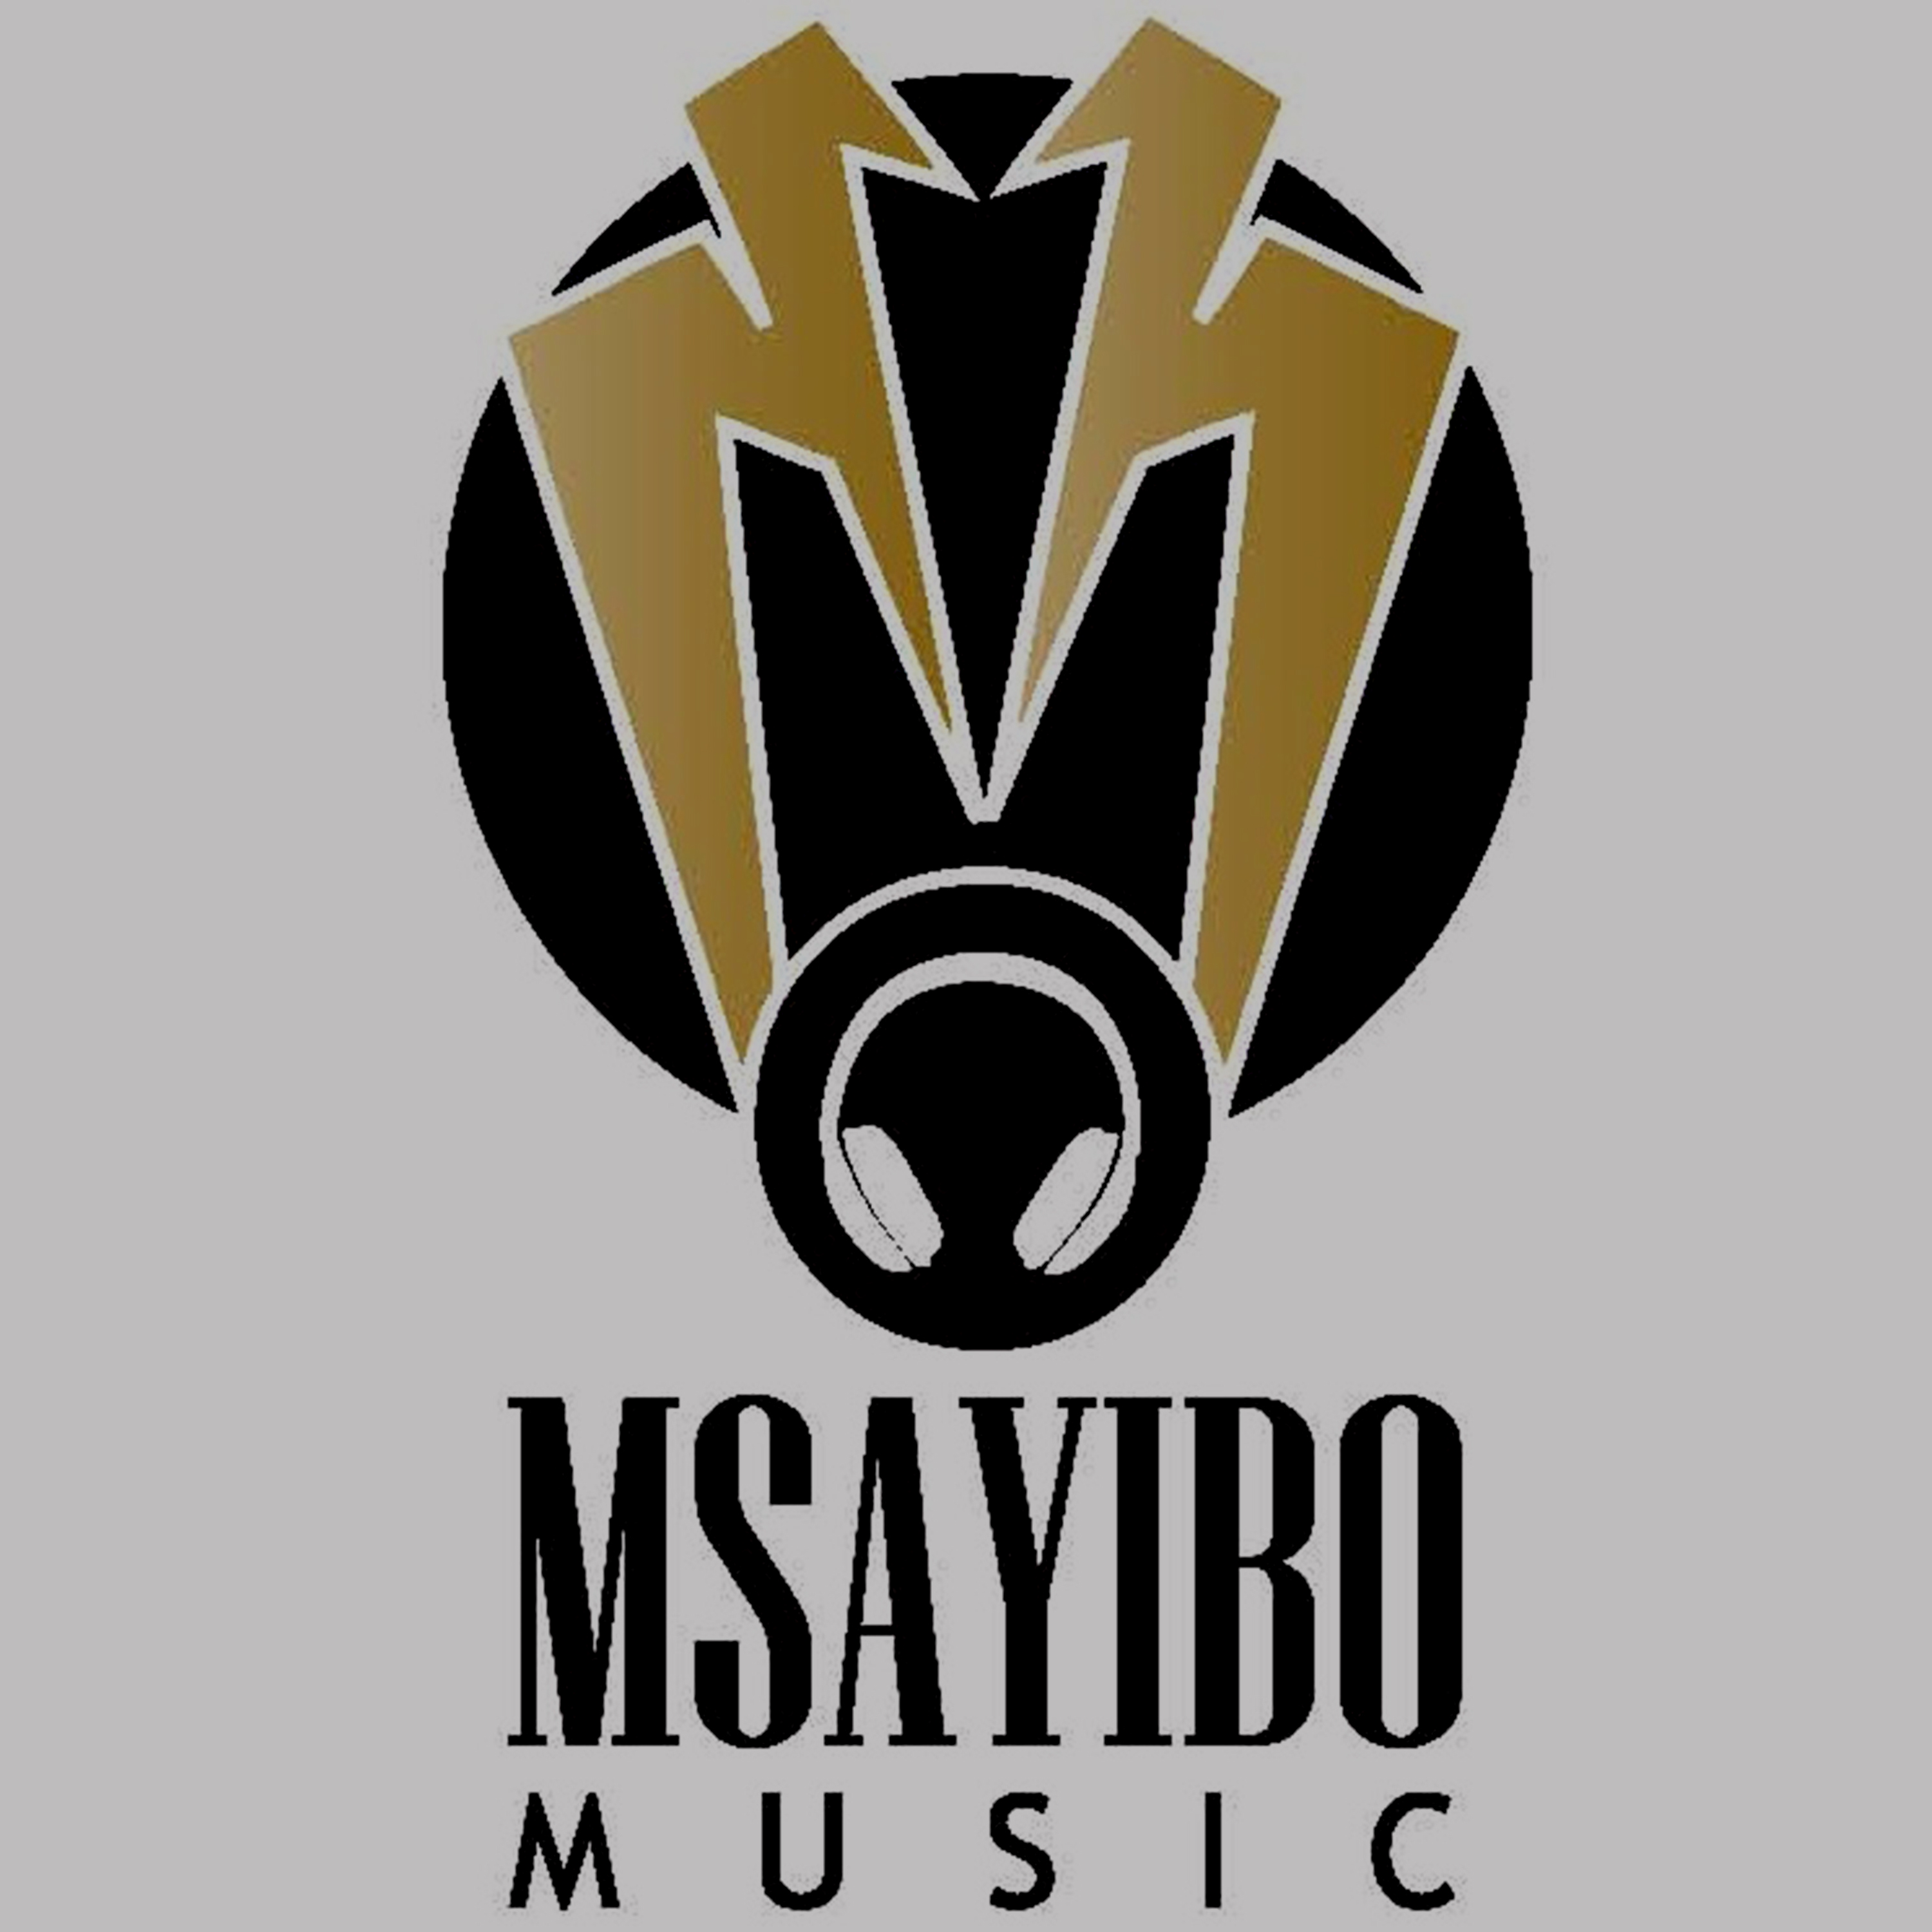 Msayibo Music Logo